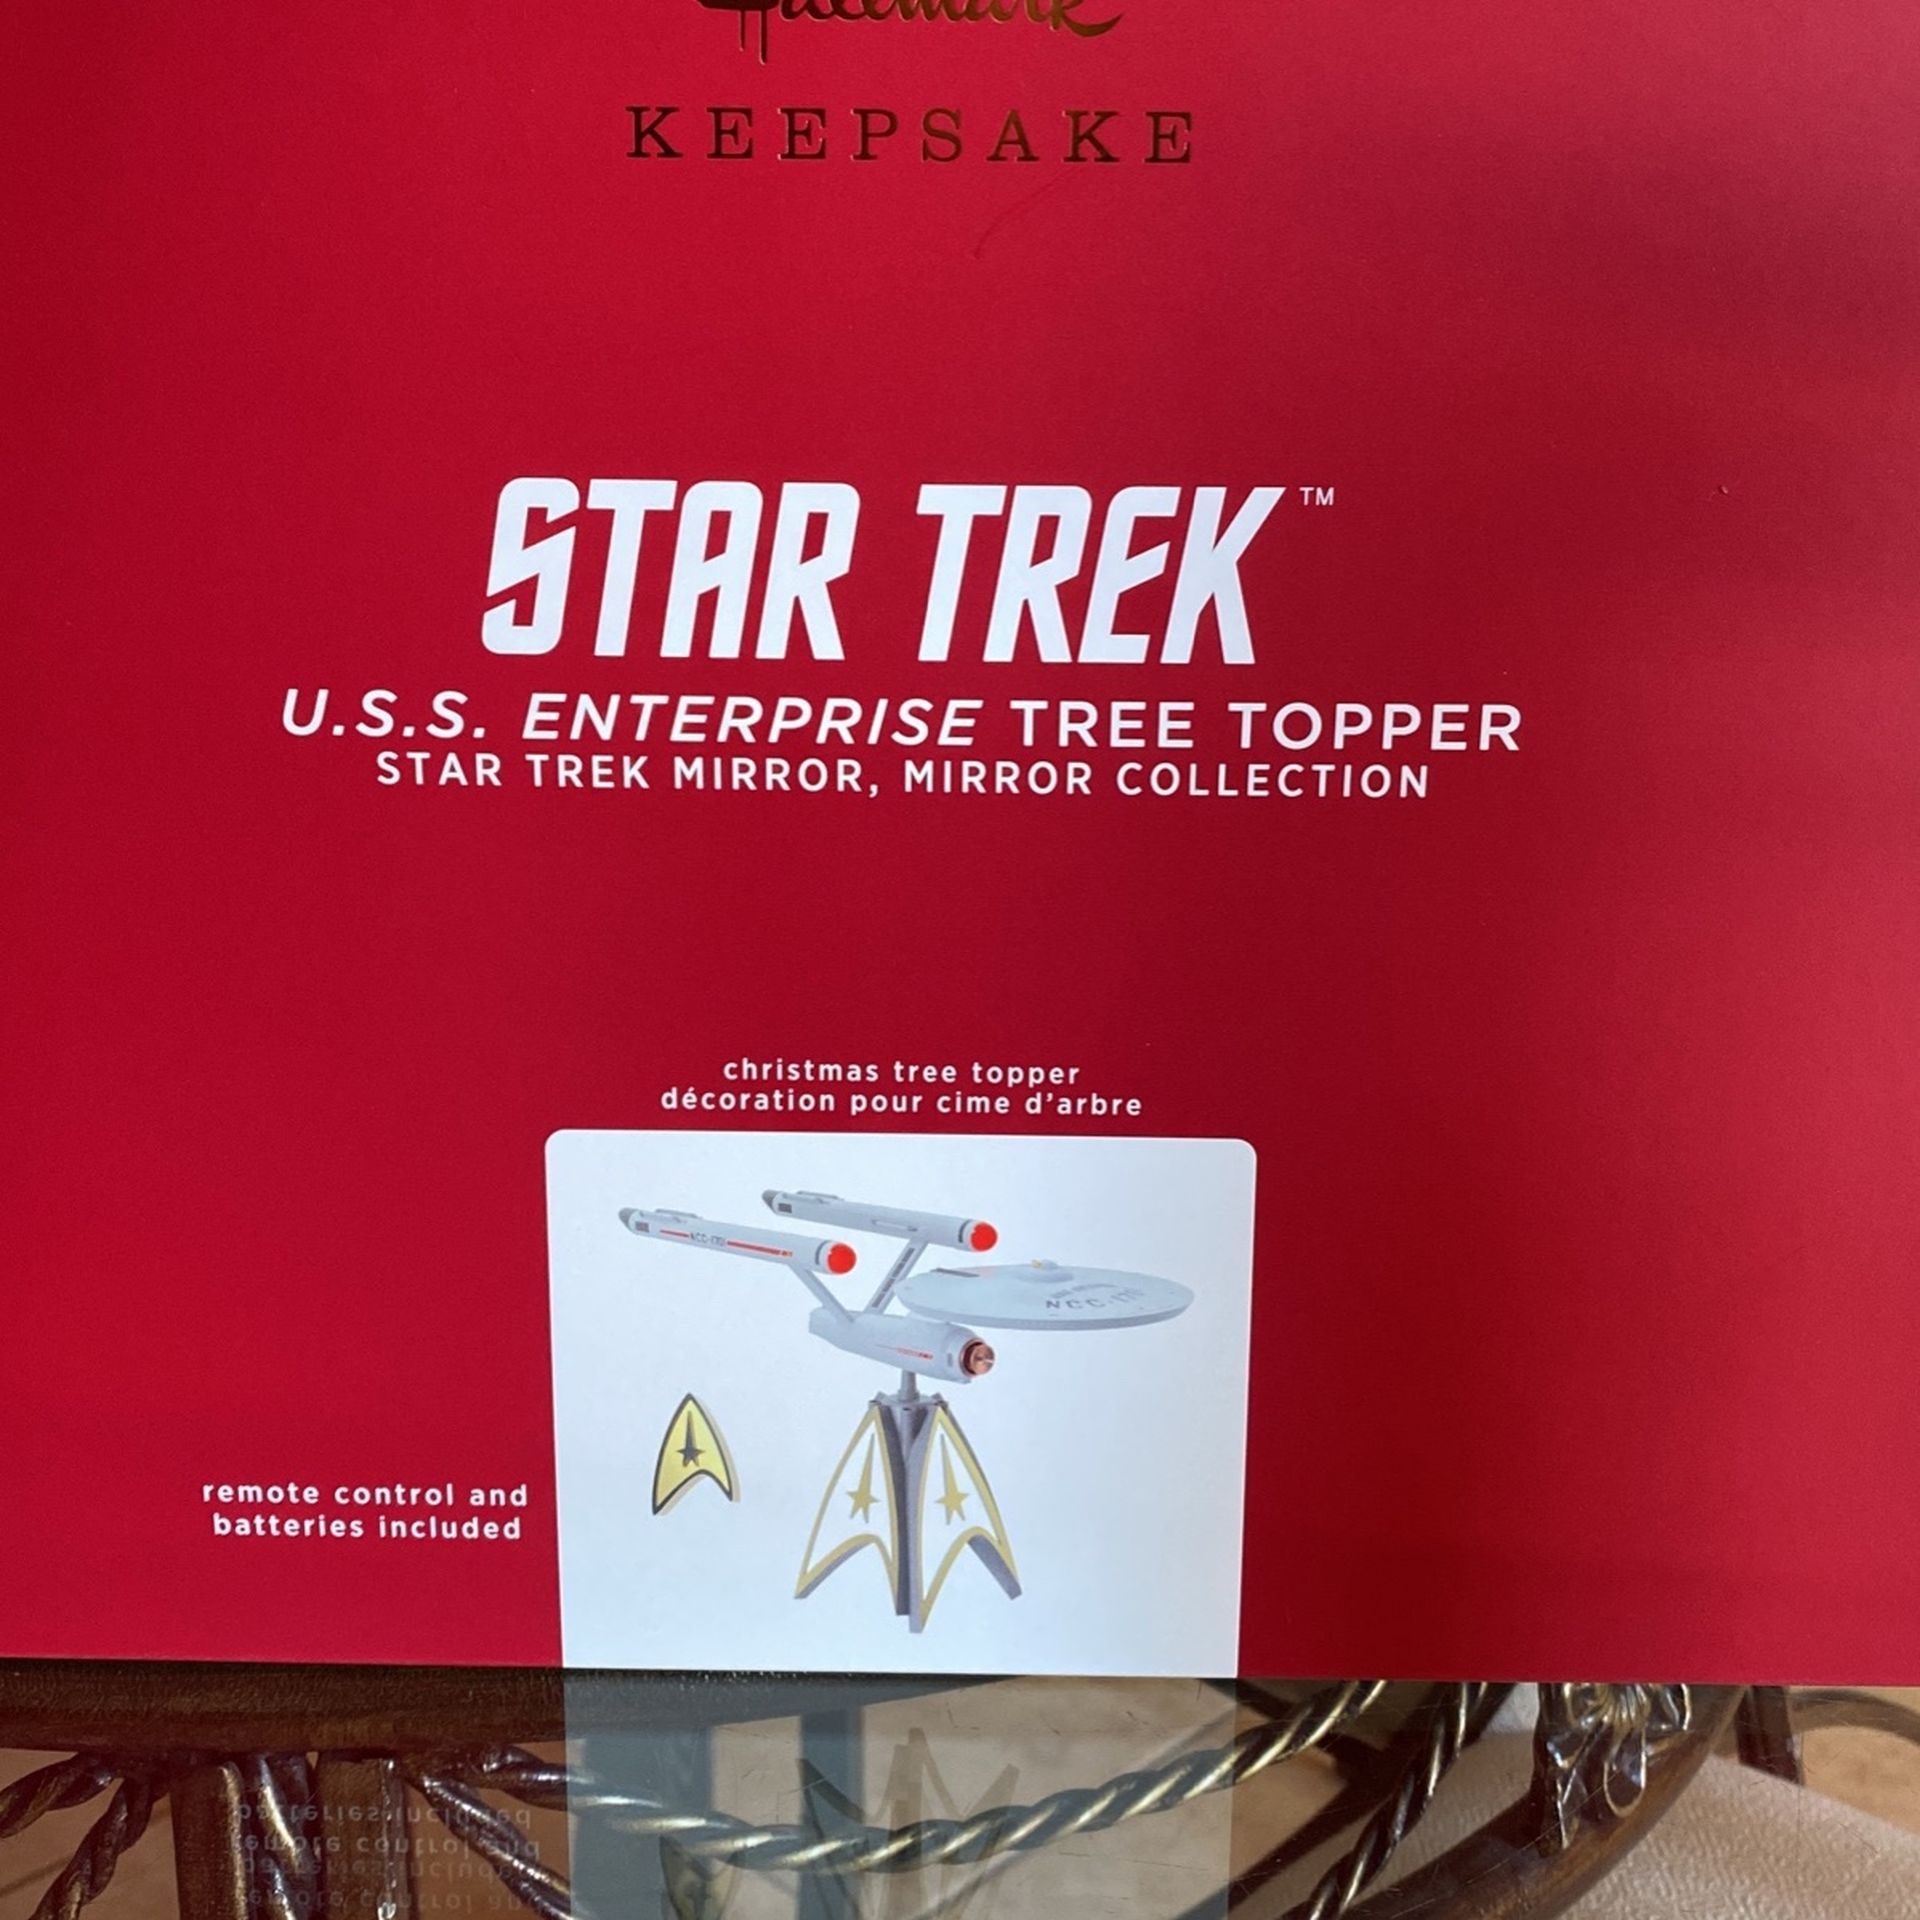 Star Trek Tree Topper